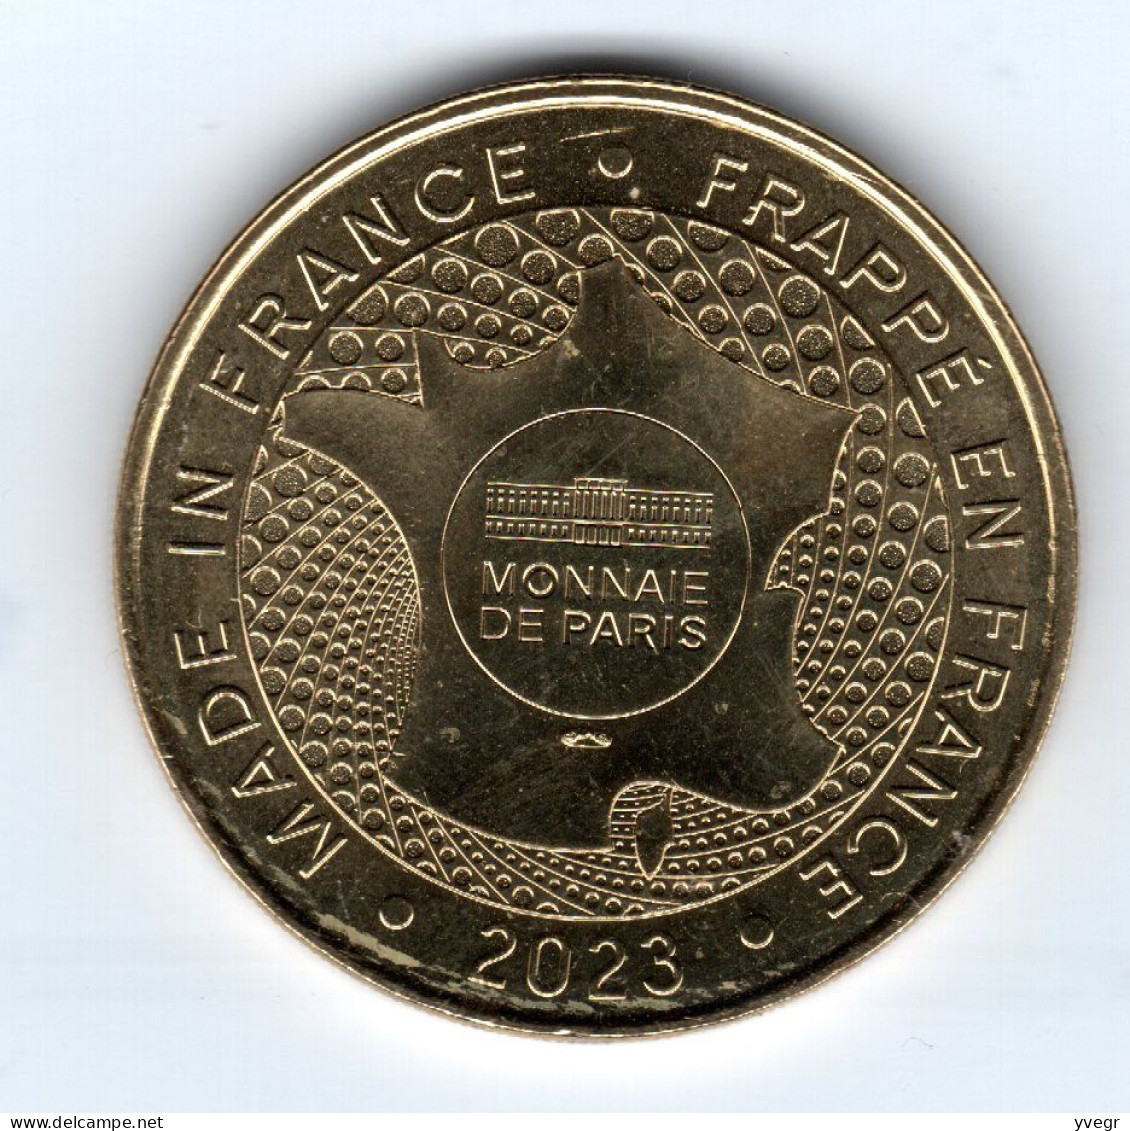 Jeton, Médaille Touristique De La Monnaie De Paris  50 CHERBOURG, La Cité De La Mer 2023 Sous-marin Le TITANIC - 2023